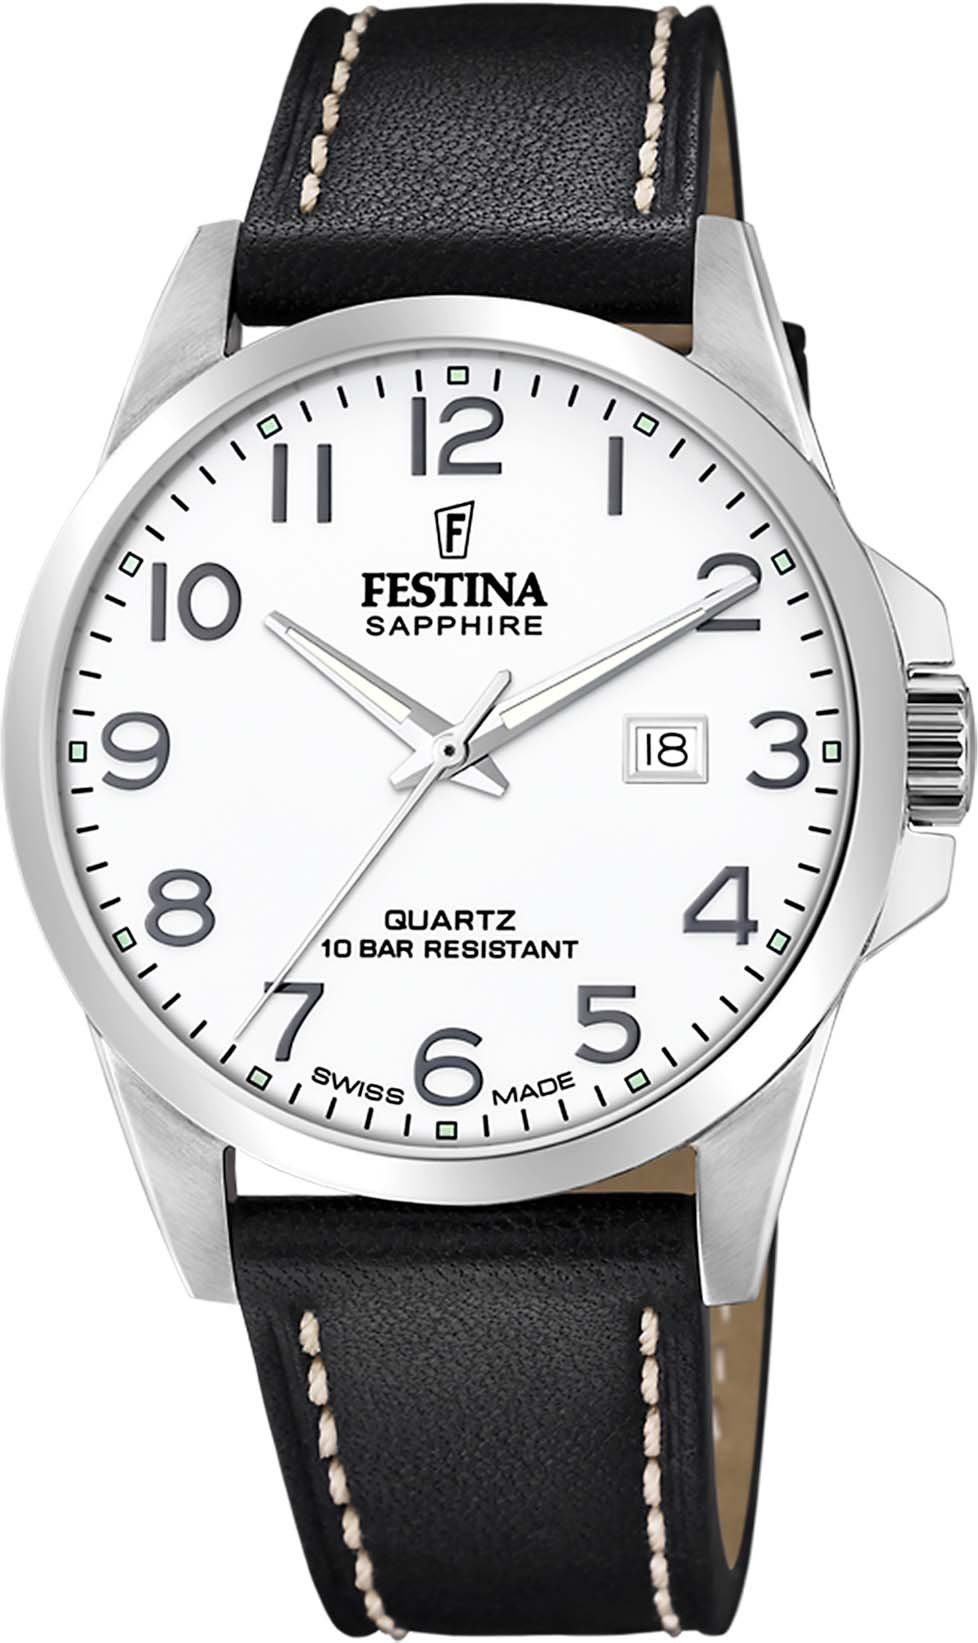 Festina Schweizer Uhr Swiss F20025/1 Made